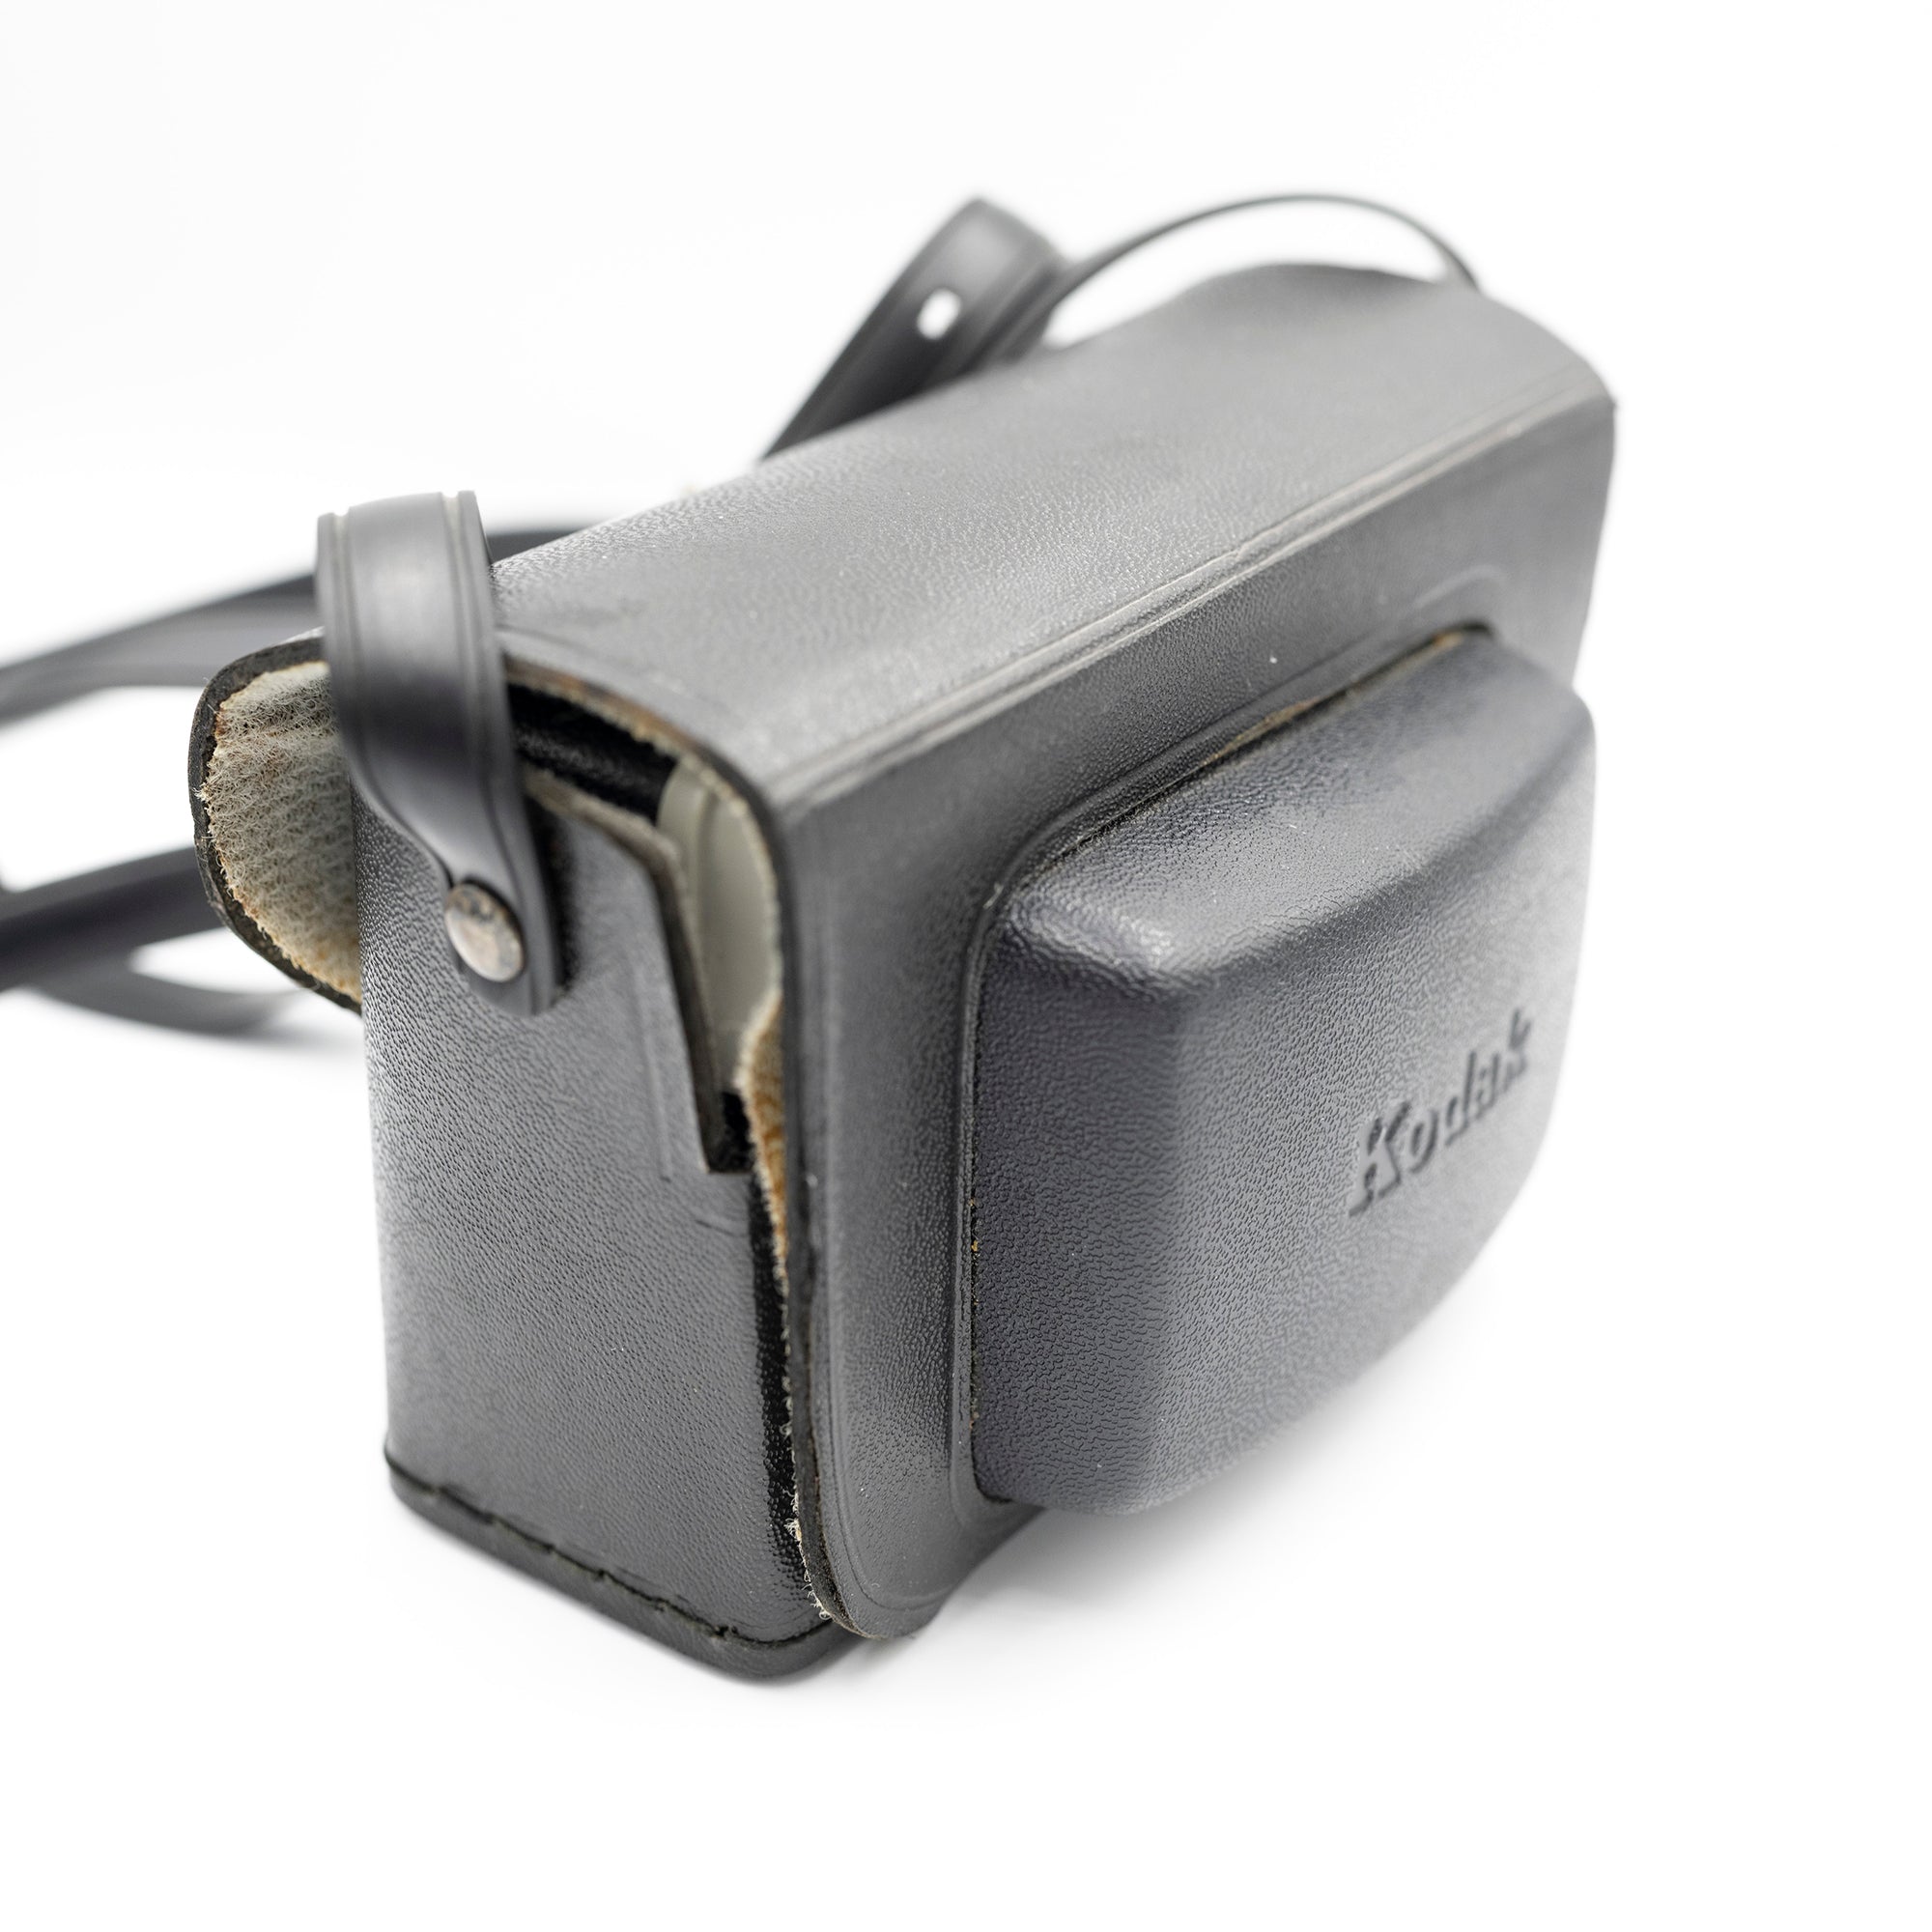 Kodak 77x 'Instamatic Camera'